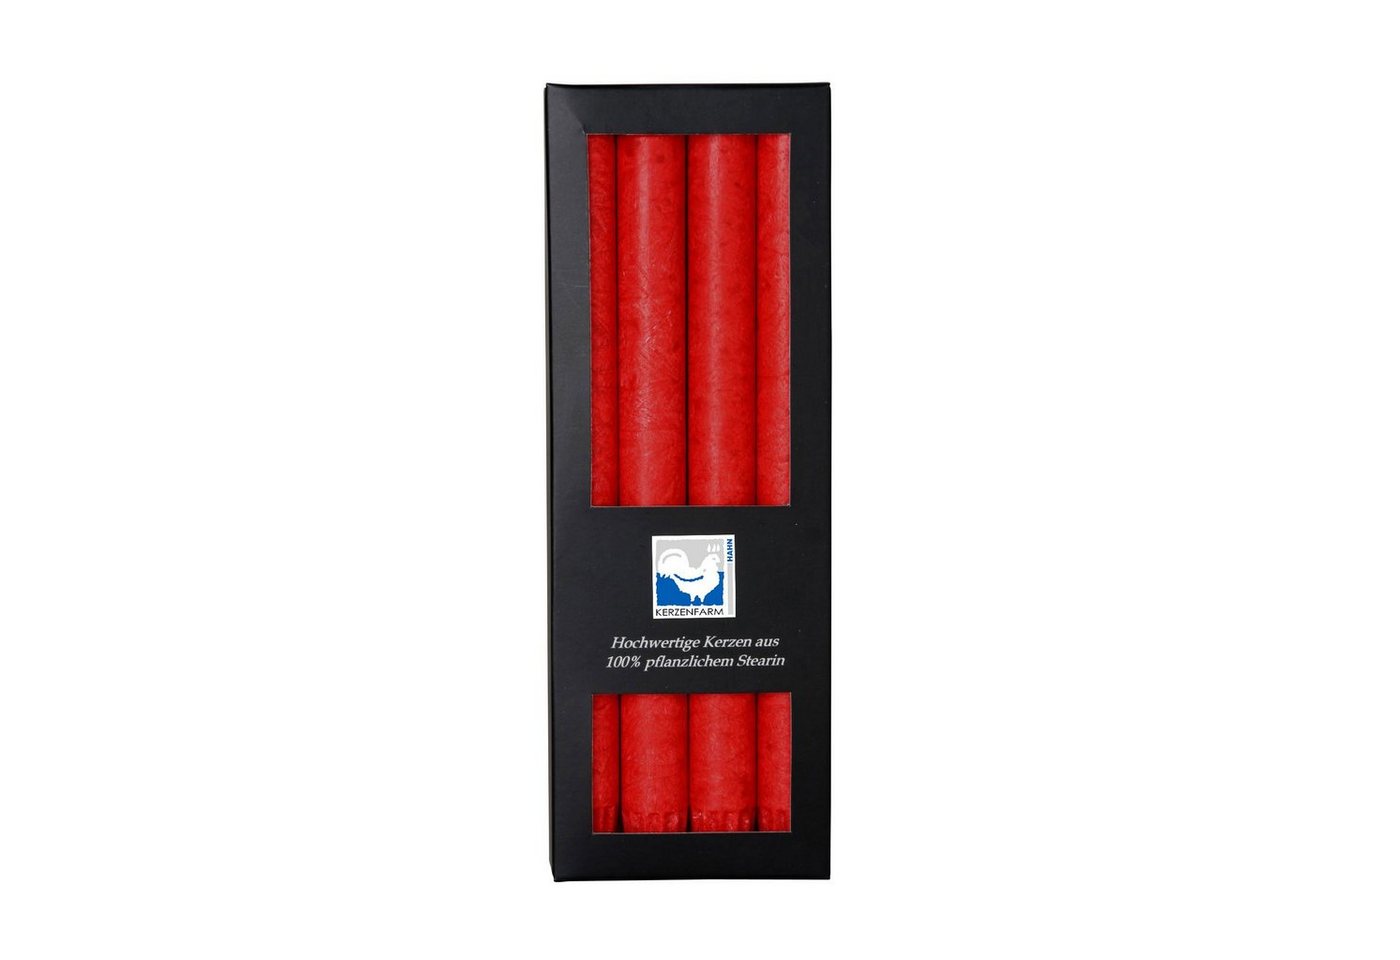 Kerzenfarm Hahn Tafelkerze stabkerze rot 22x250mm 4er Set 100% stearin von Kerzenfarm Hahn